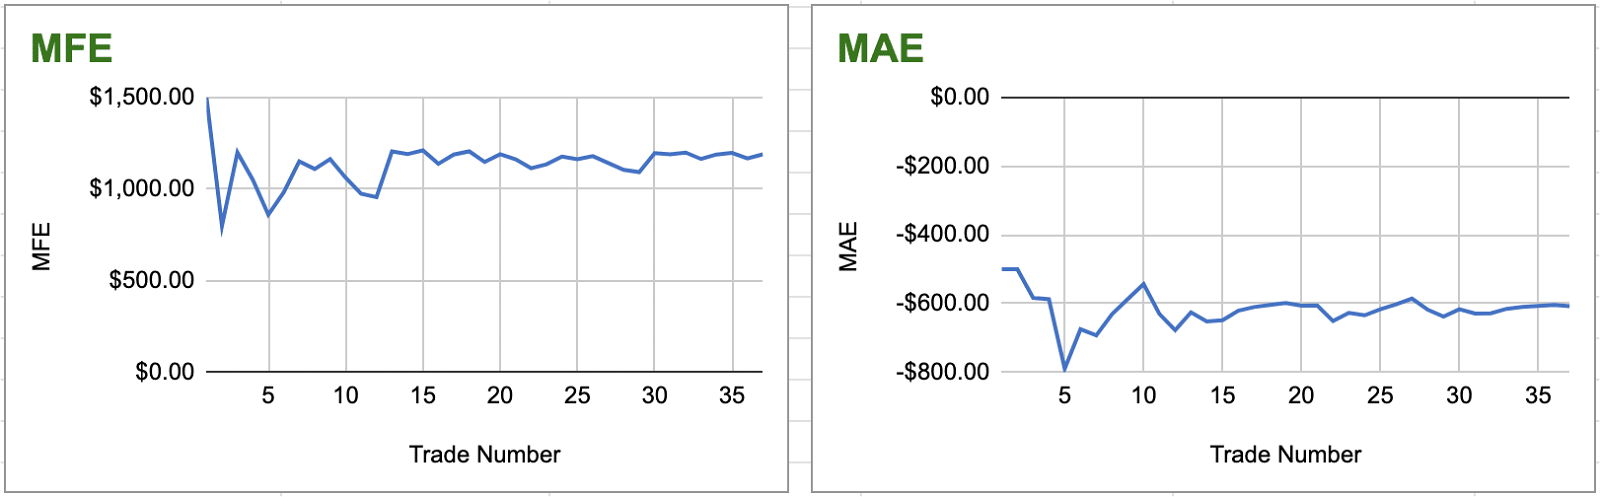 Google Sheet Graphs Displaying MFE & MAE